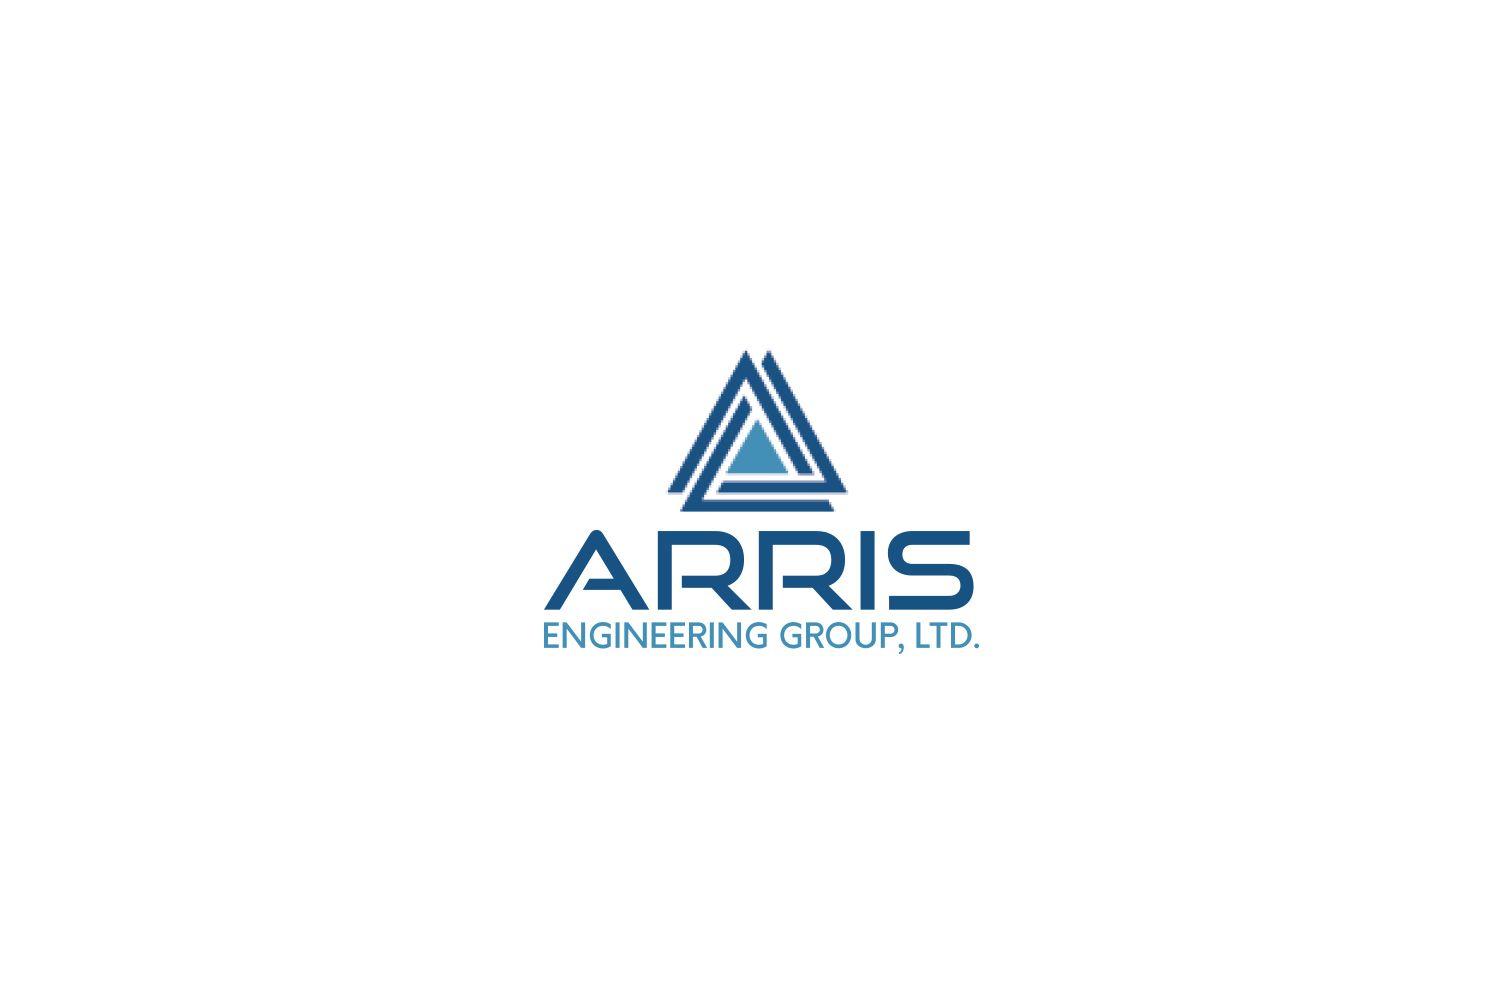 Arris Logo - Elegant, Playful, Business Logo Design for Arris Engineering Group ...